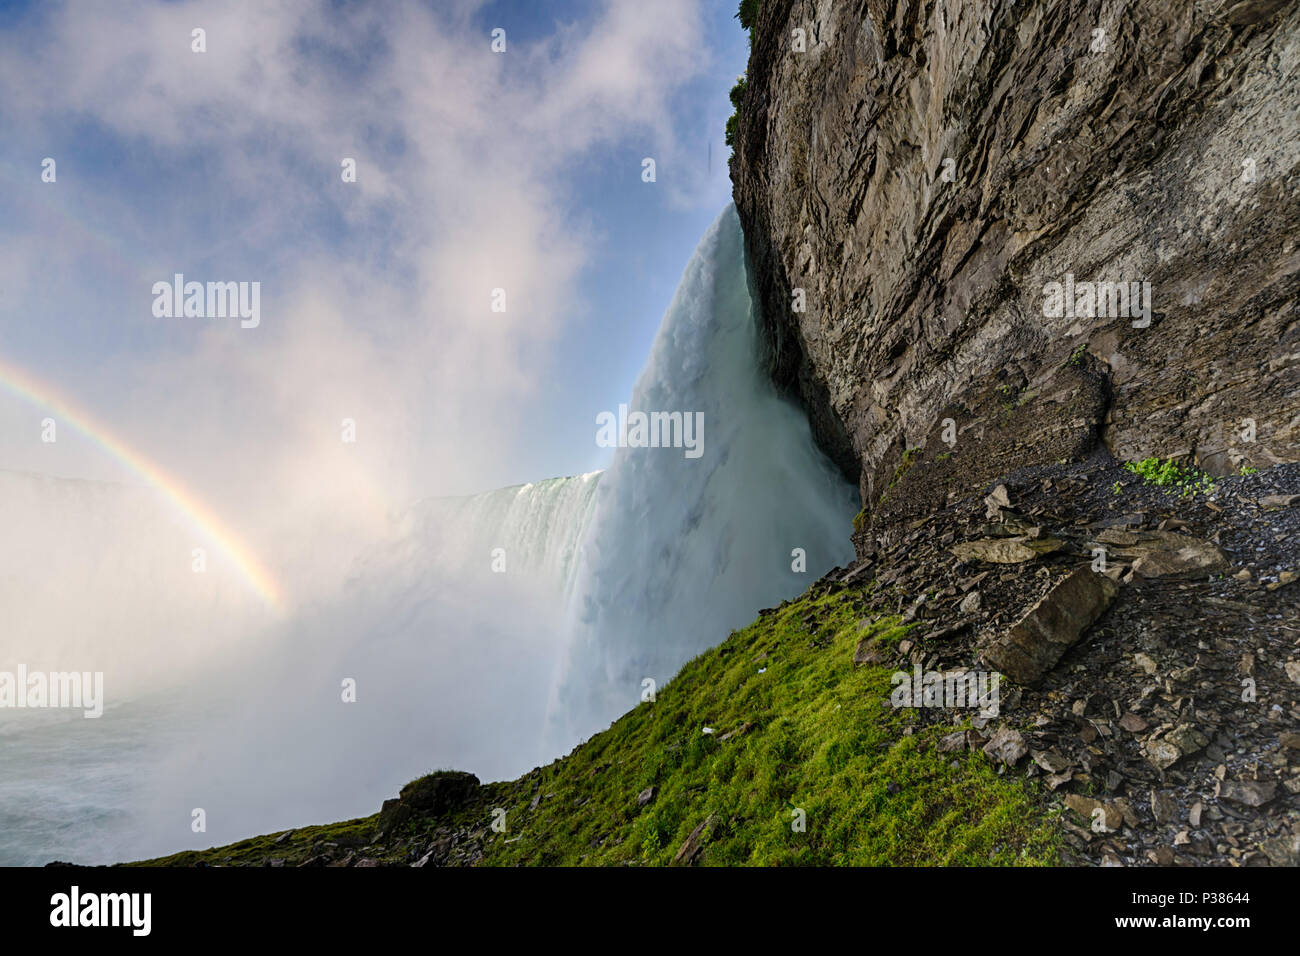 Famous waterfall, Niagara falls in Canada, Ontario Stock Photo